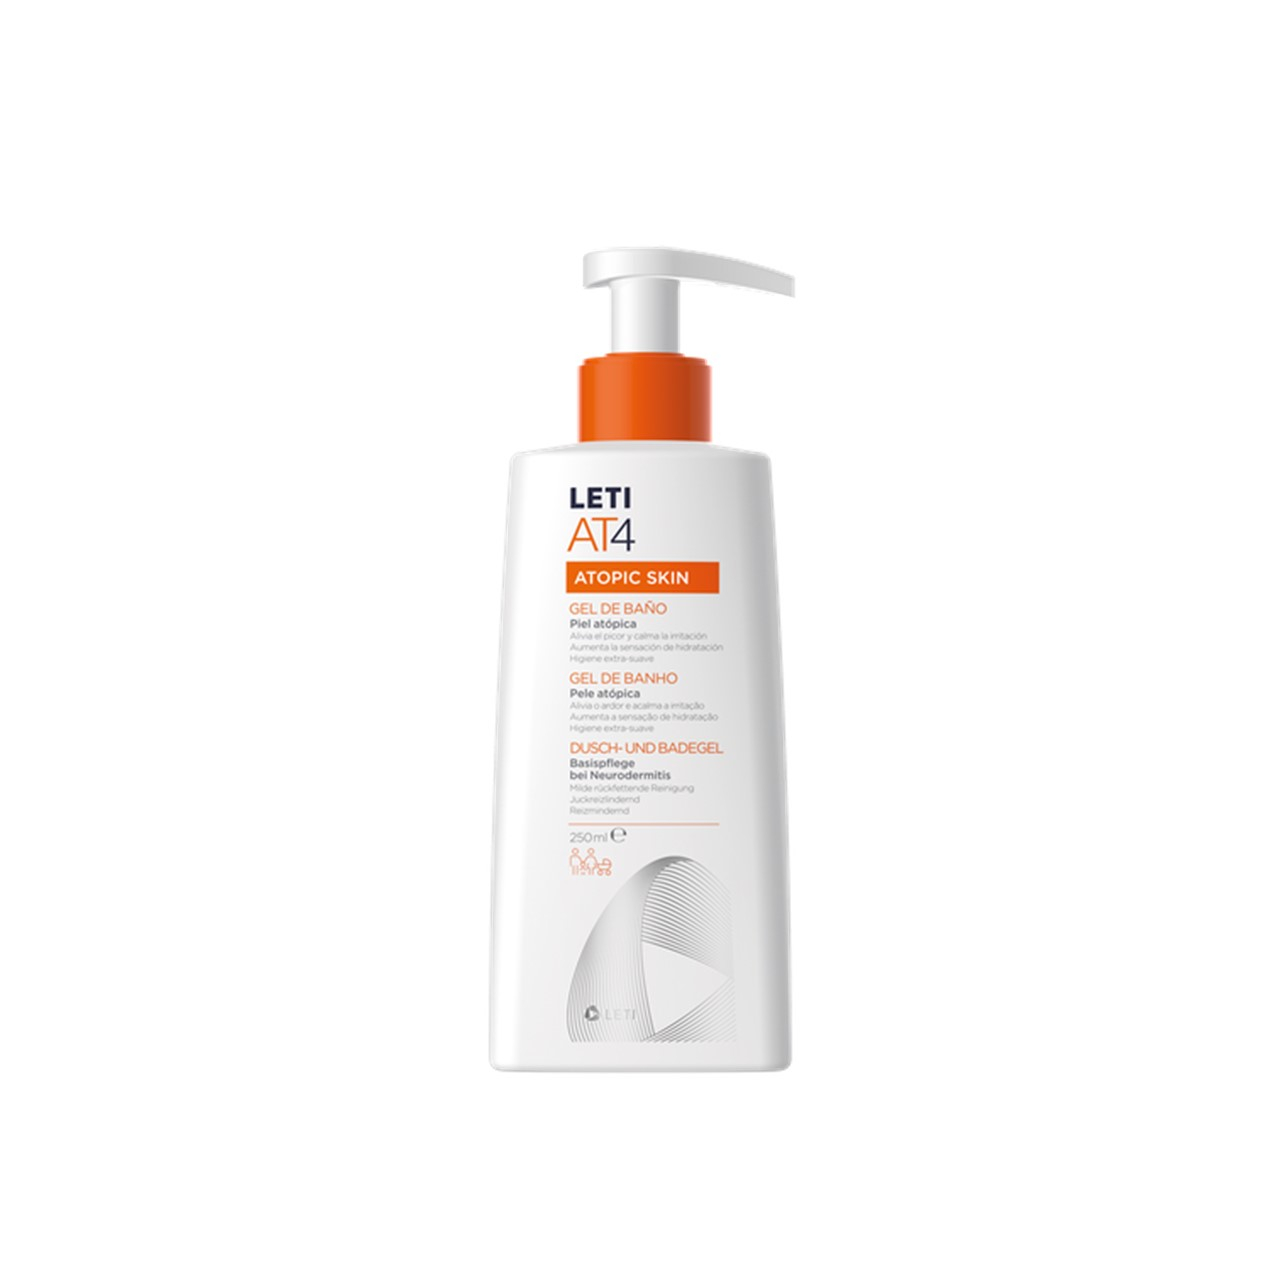 LETI AT4 Atopic Skin Bath Gel 250ml (8.45fl oz)